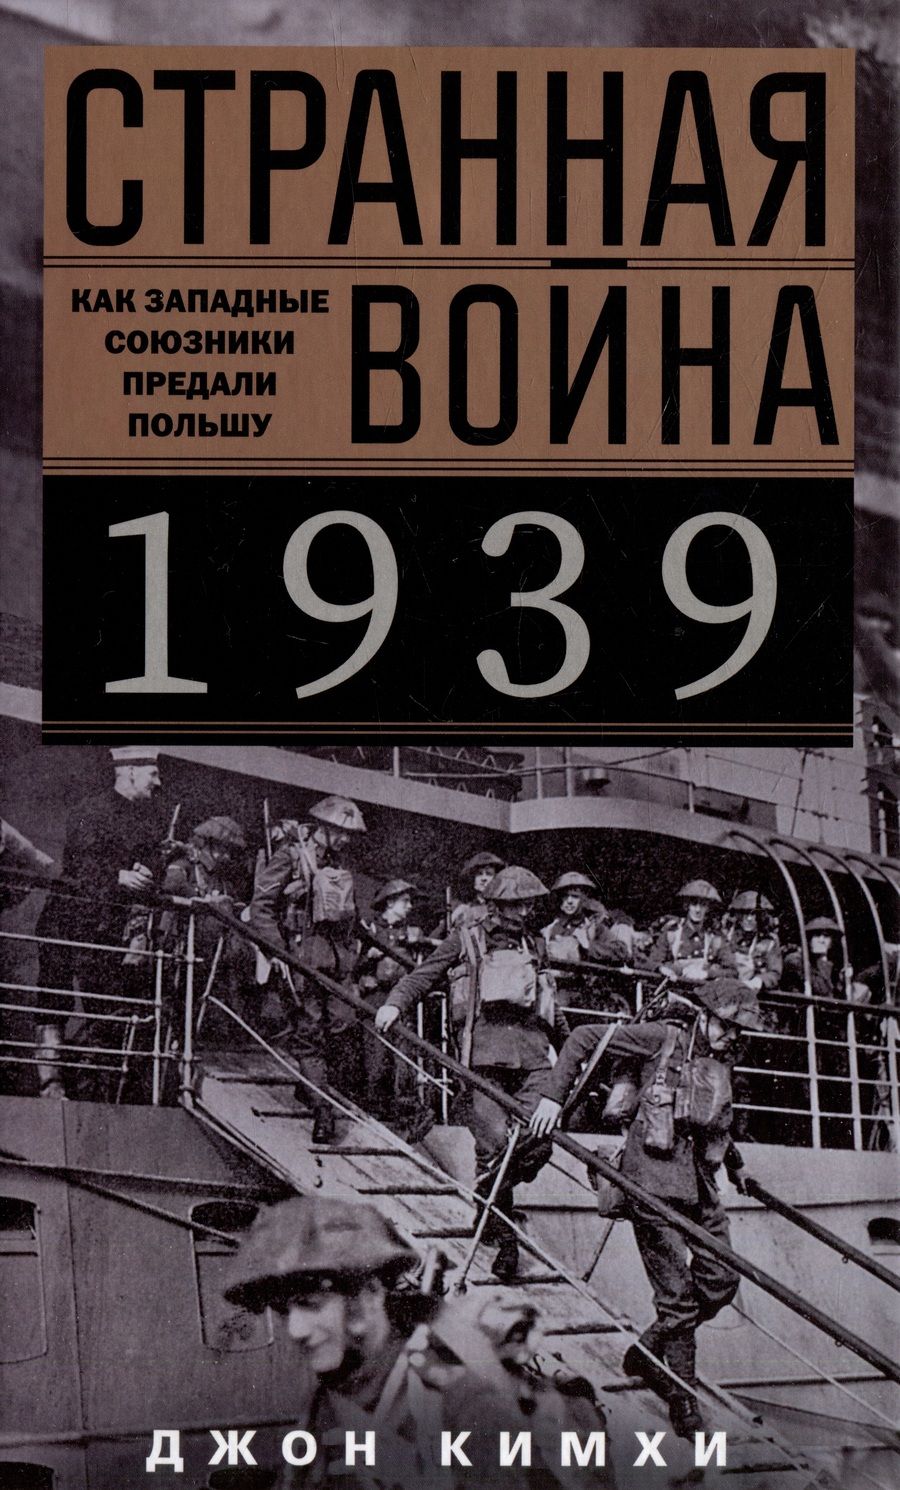 Обложка книги "Кимхи: Странная война 1939 года. Как западные союзники предали Польшу"